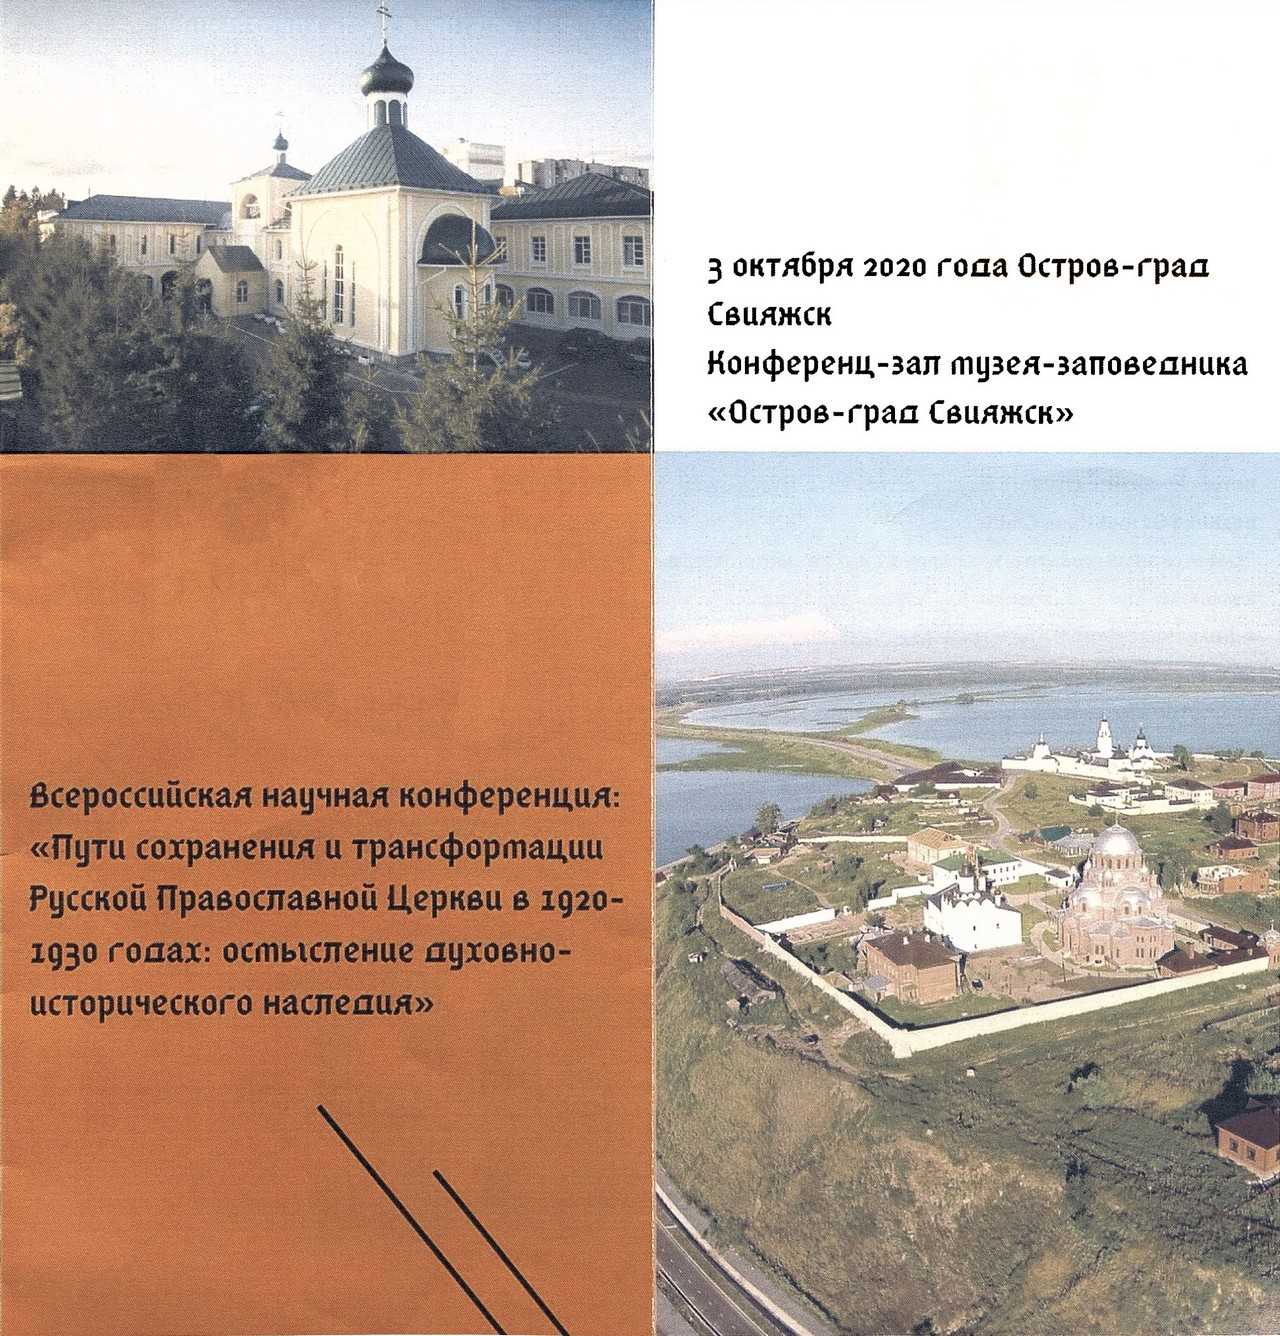 Крепость, монастырь, тюрьма: что теперь можно увидеть на историческом остров-граде свияжск